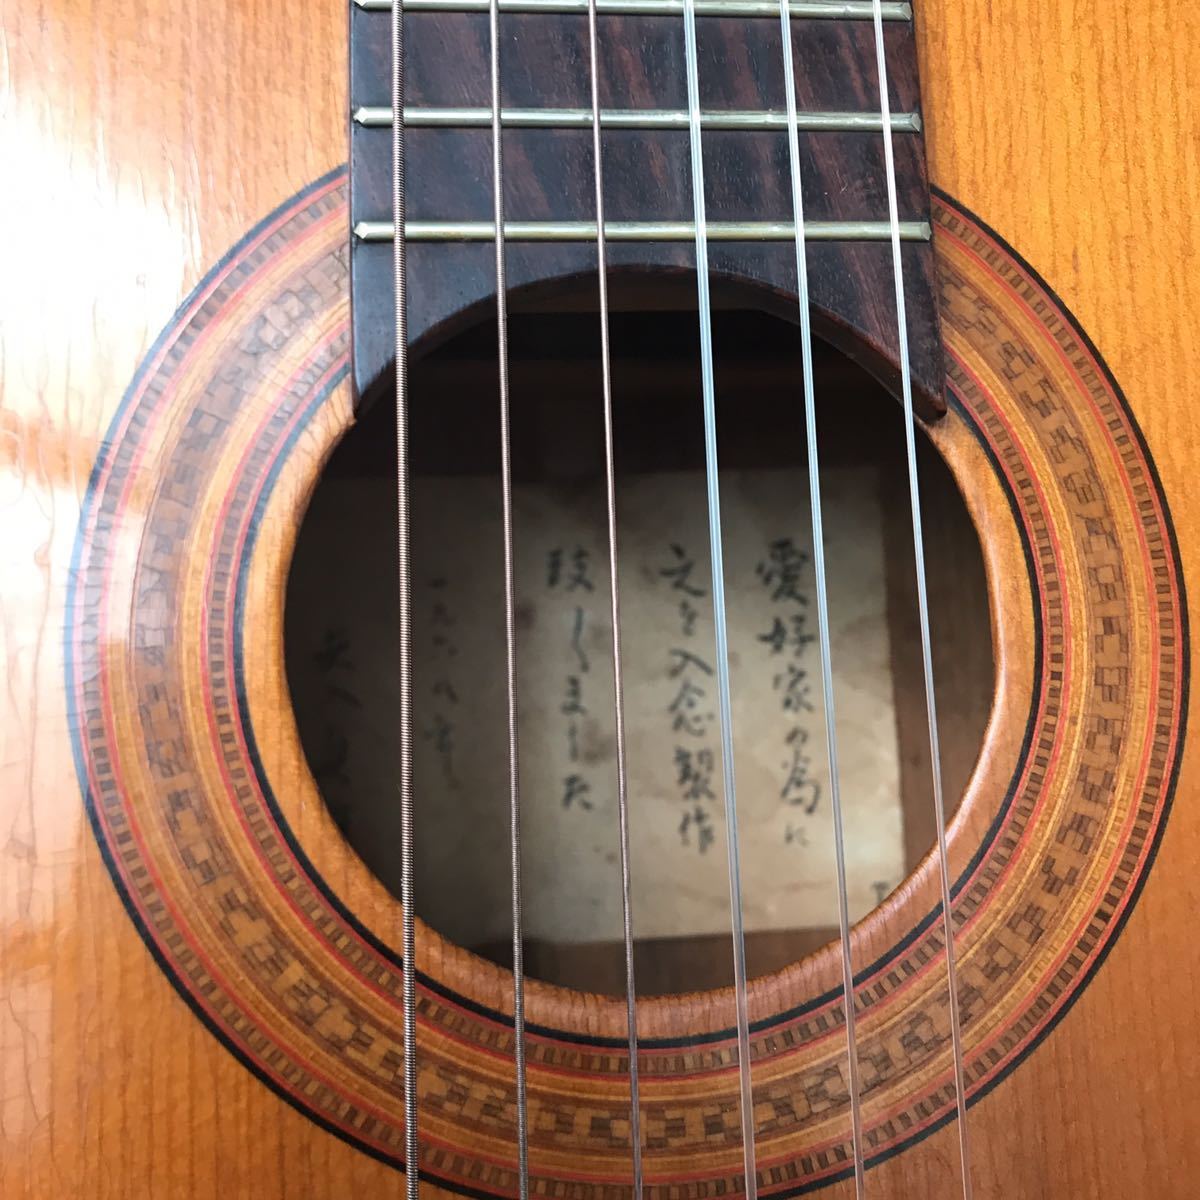 矢入貞雄 1970年製 SY-25A ハードケース入 アコースティックギター 【返品不可】